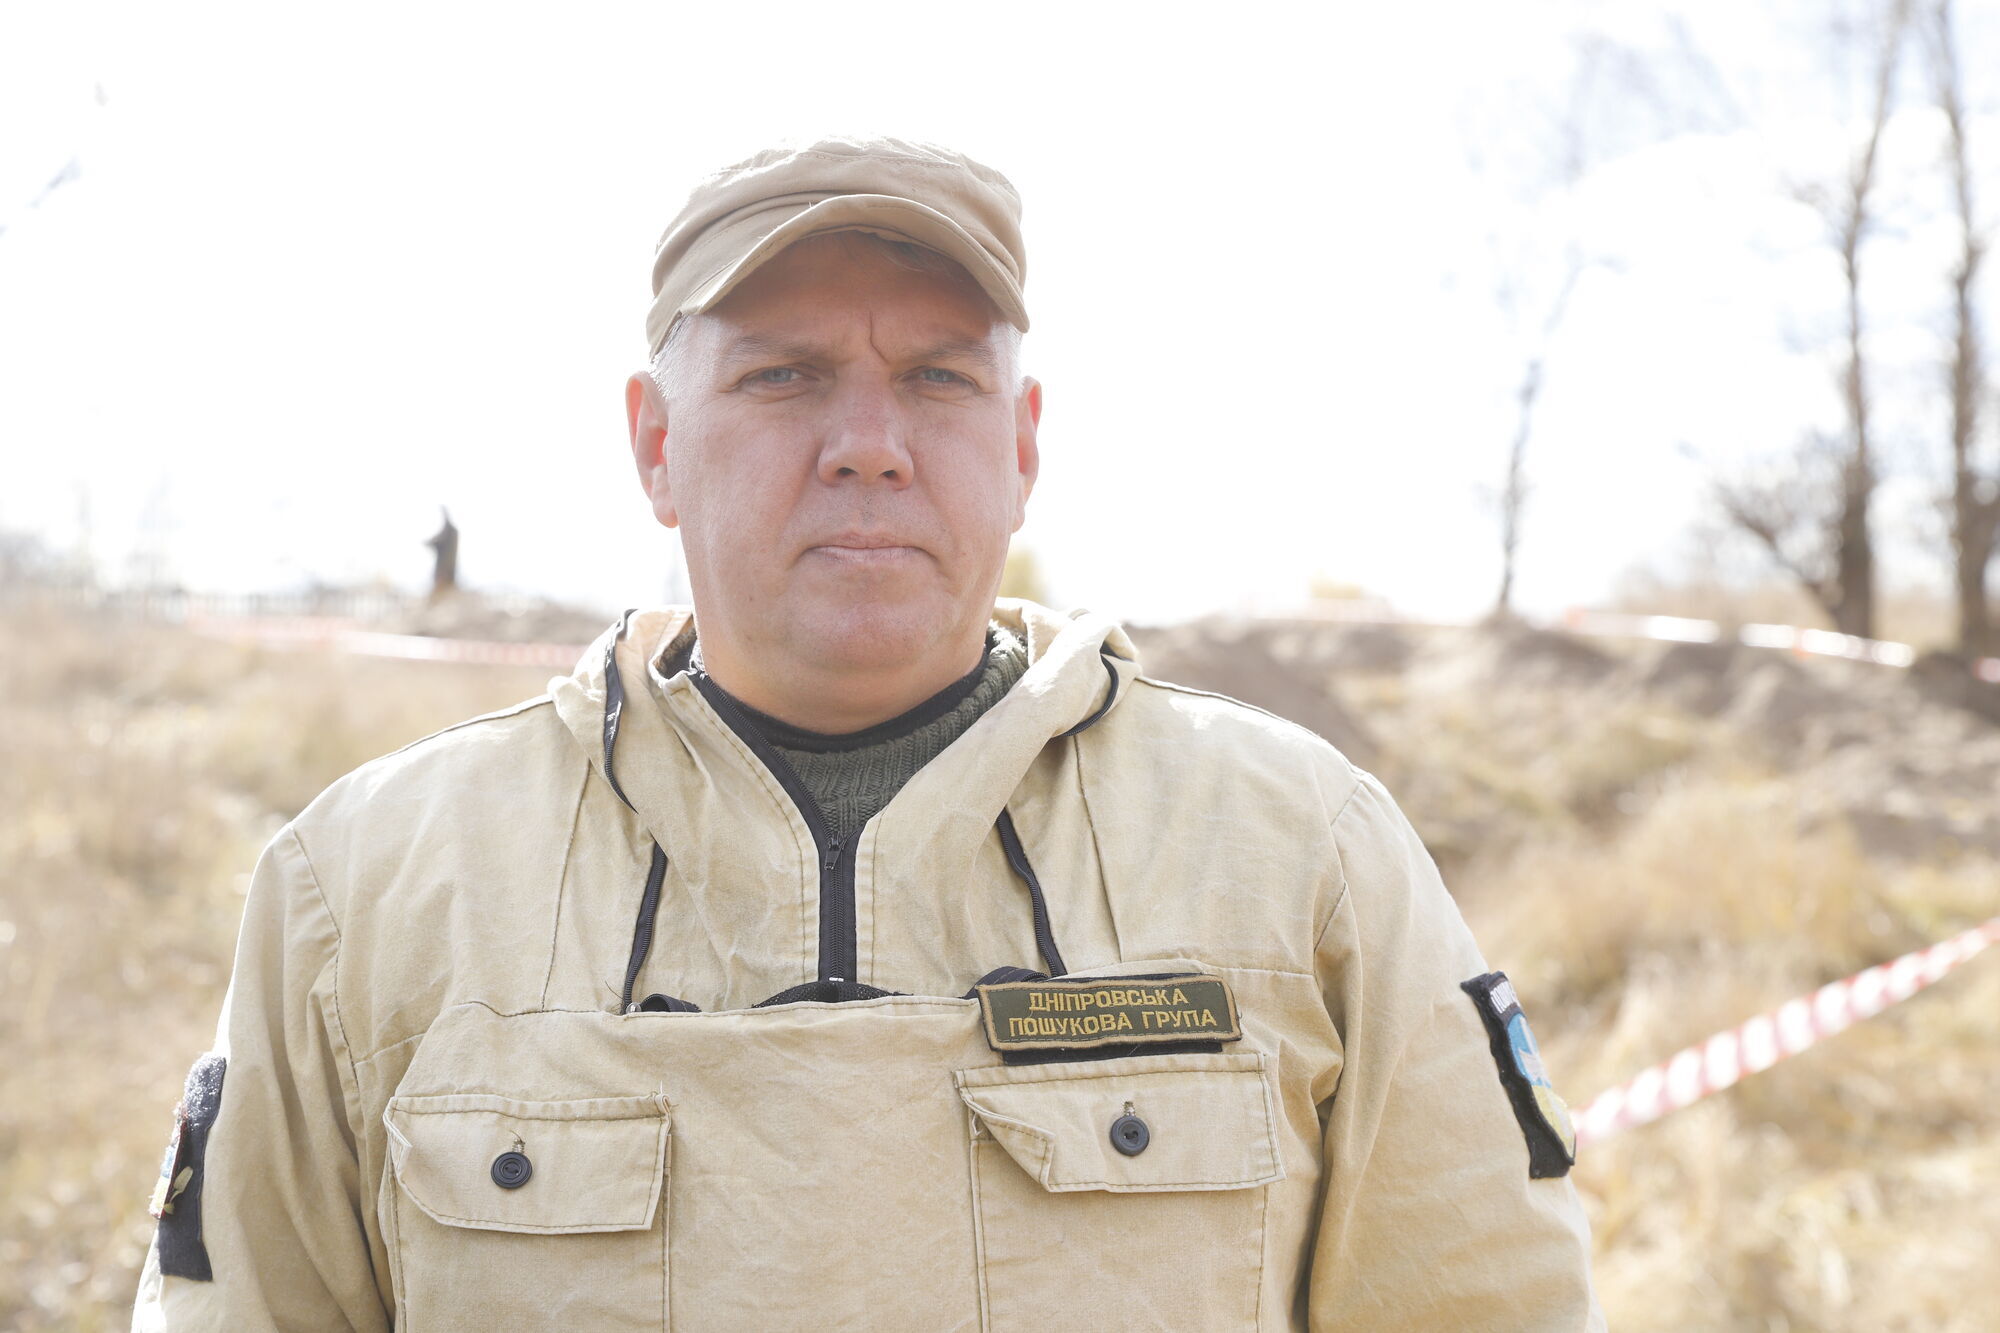 Руководитель поисковой организации "Поиск-Днепр" Андрей Бижко рассказал о раскопках